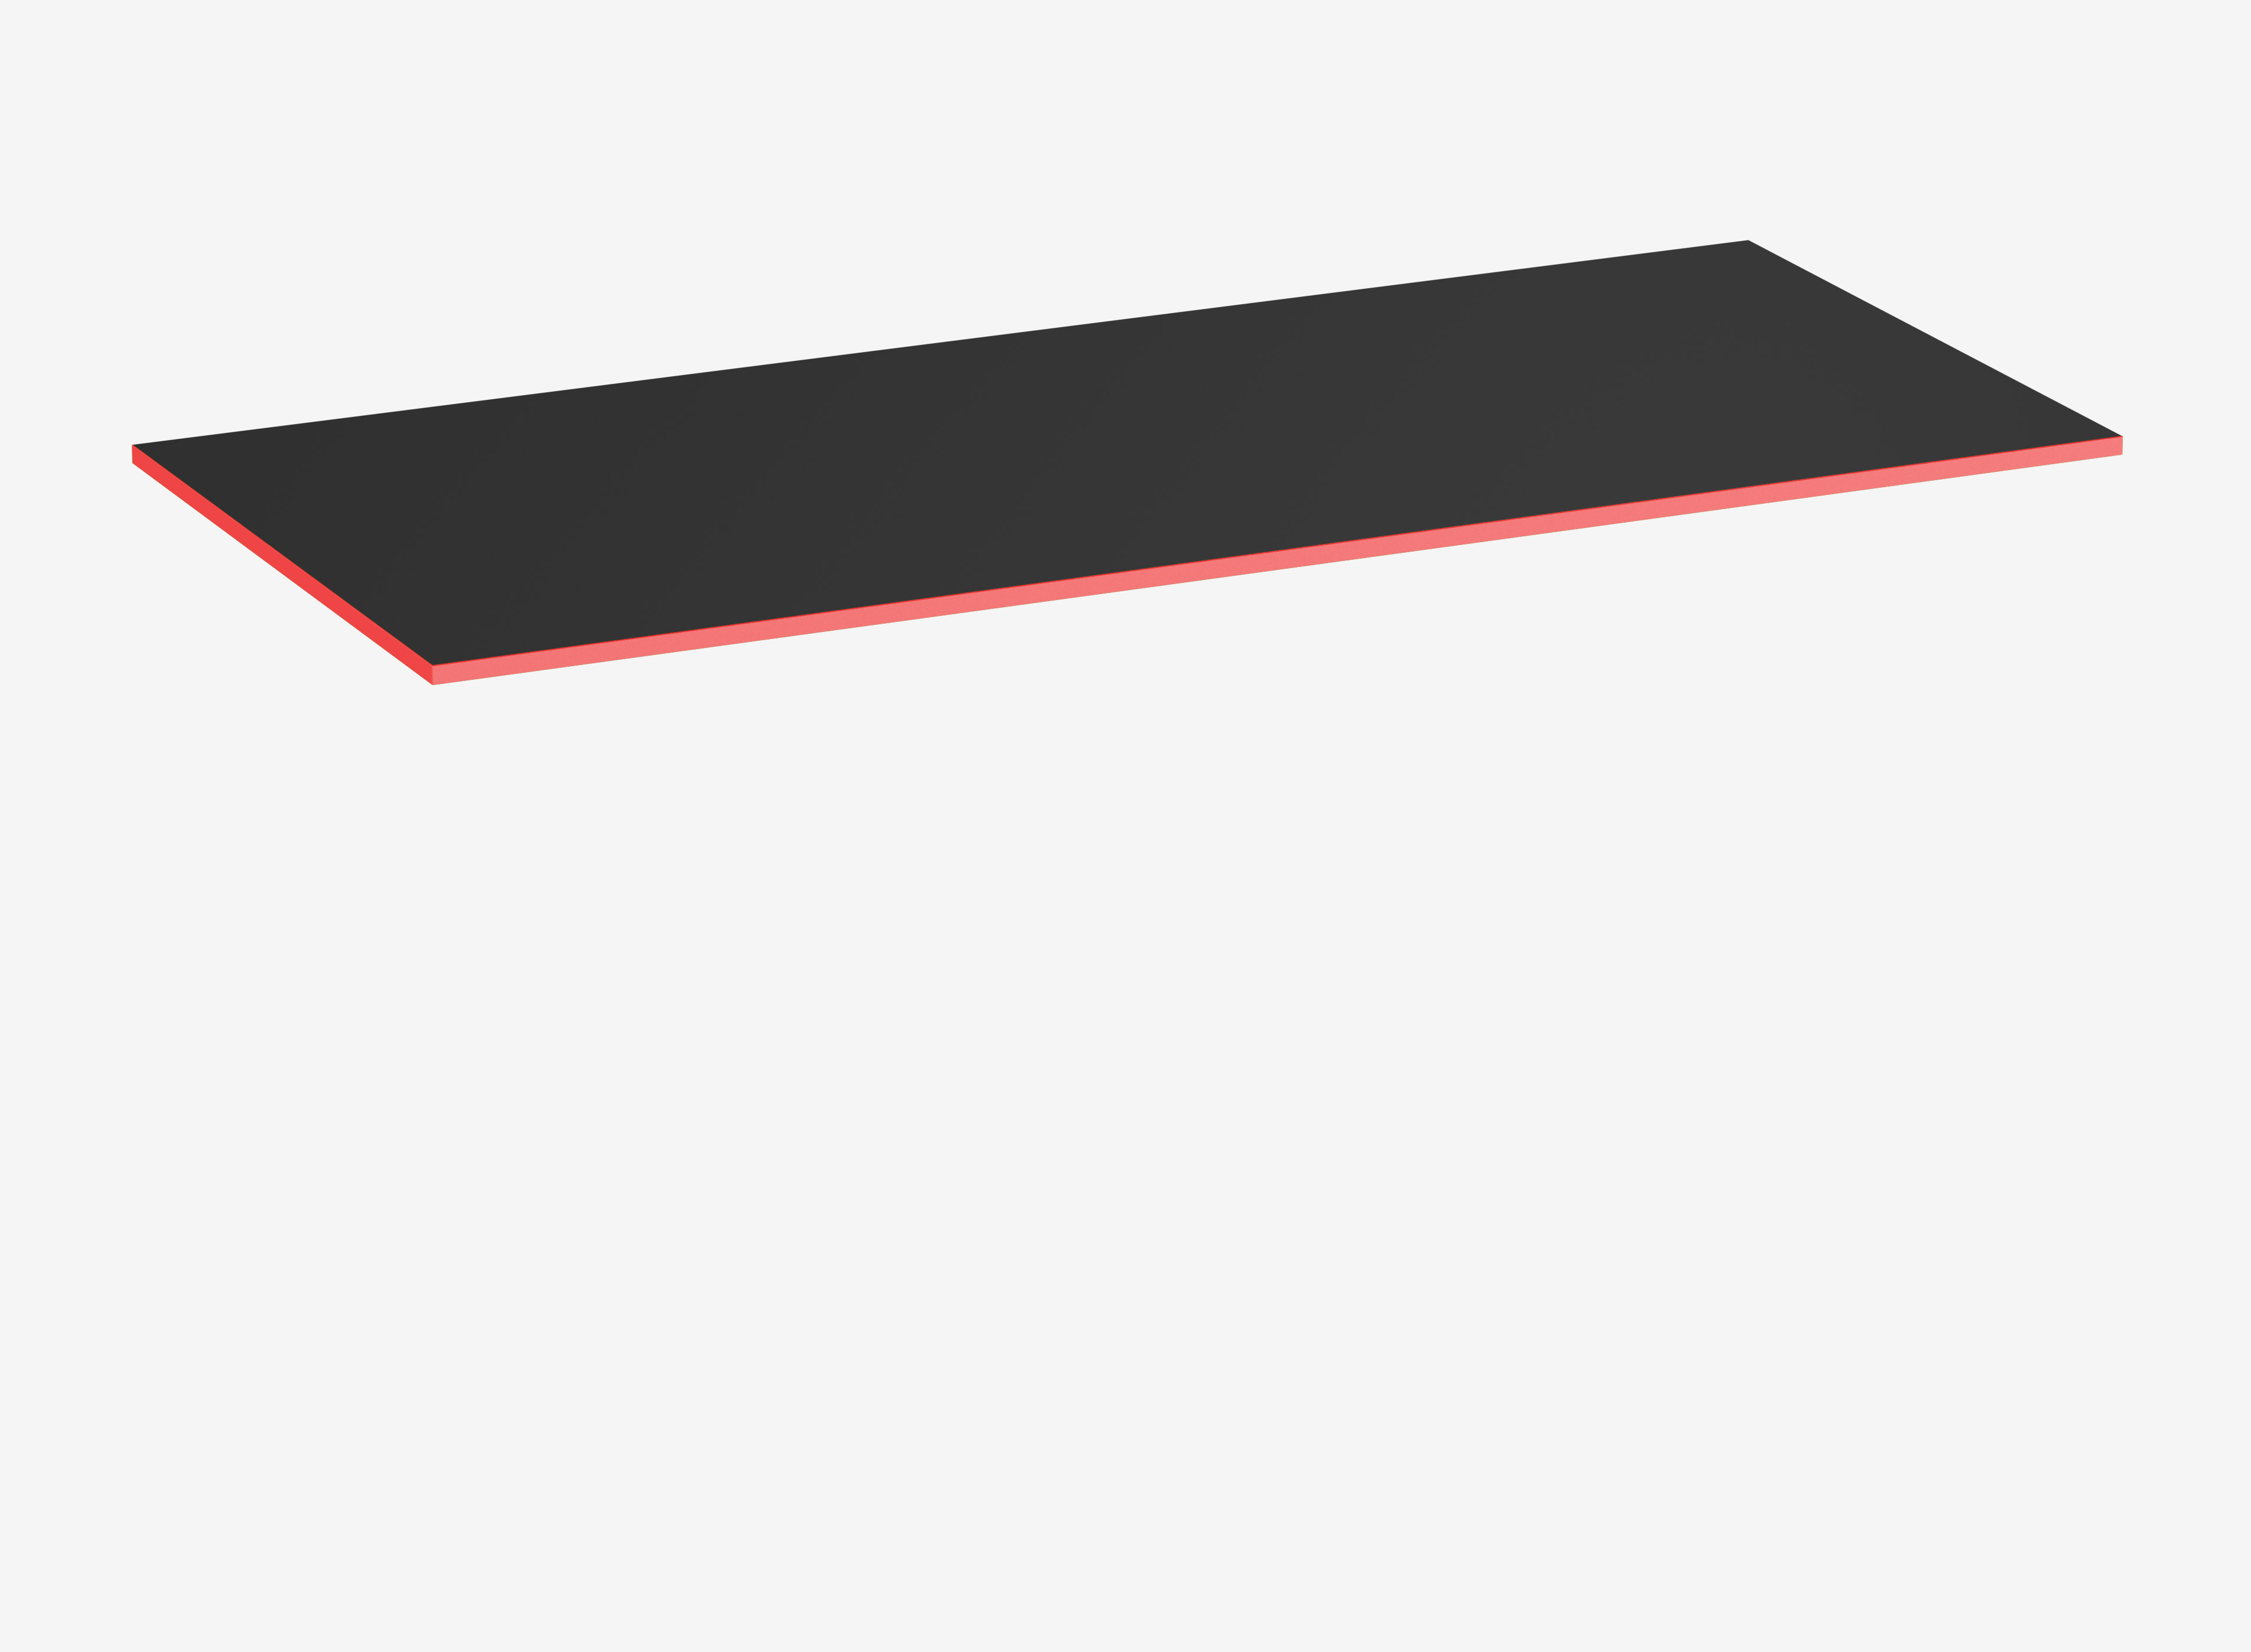 Gamingtischplatte Rechteck, Schwarz, Klassik, 1600 x 800 x 19 mm, Kante Fire Red